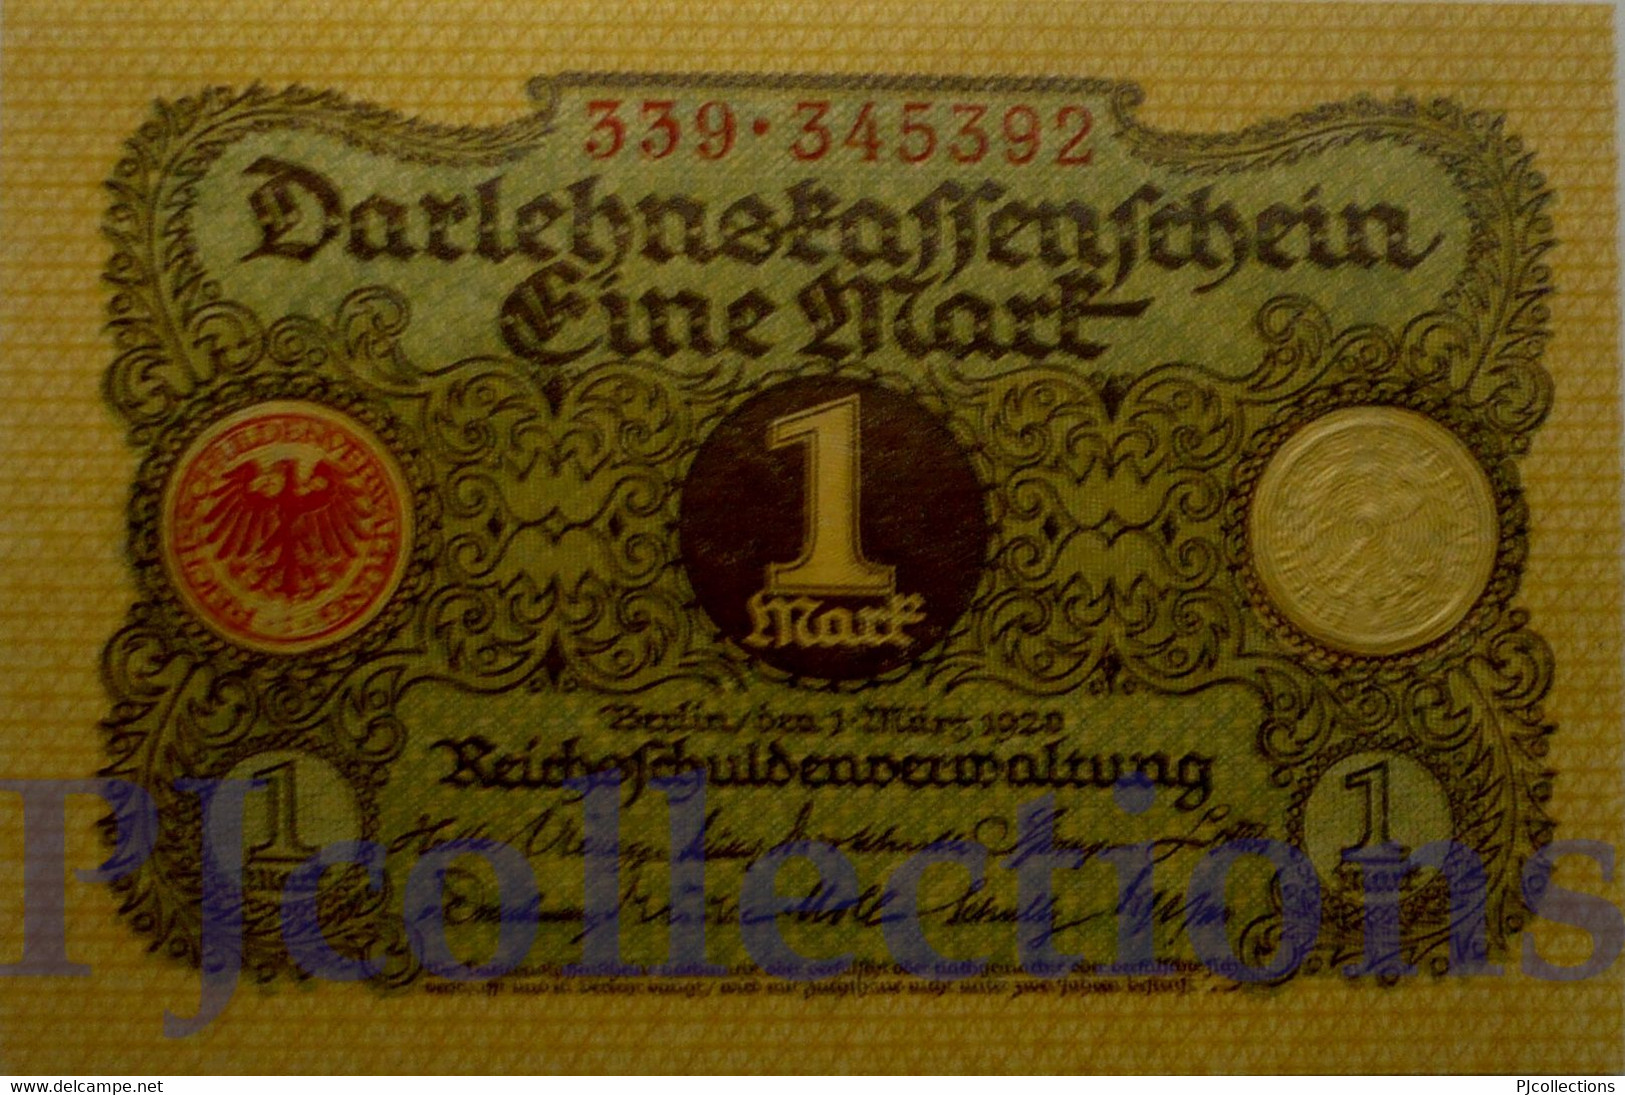 GERMANY 1 MARK 1920 PICK 58 UNC - Administration De La Dette